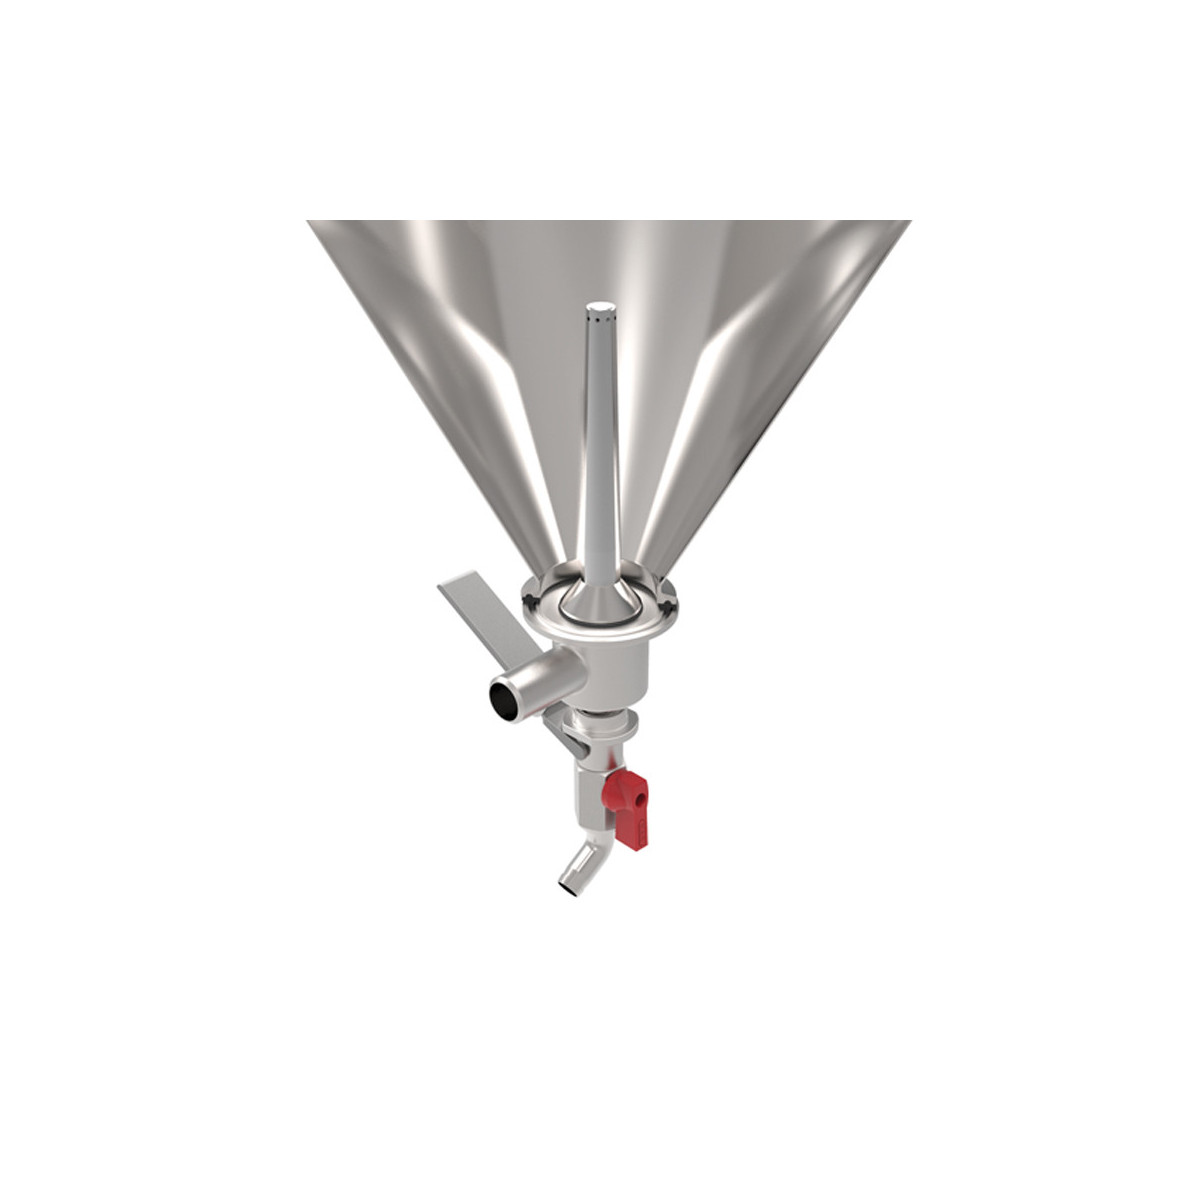 Grainfather Conical Fermenter - dual valve